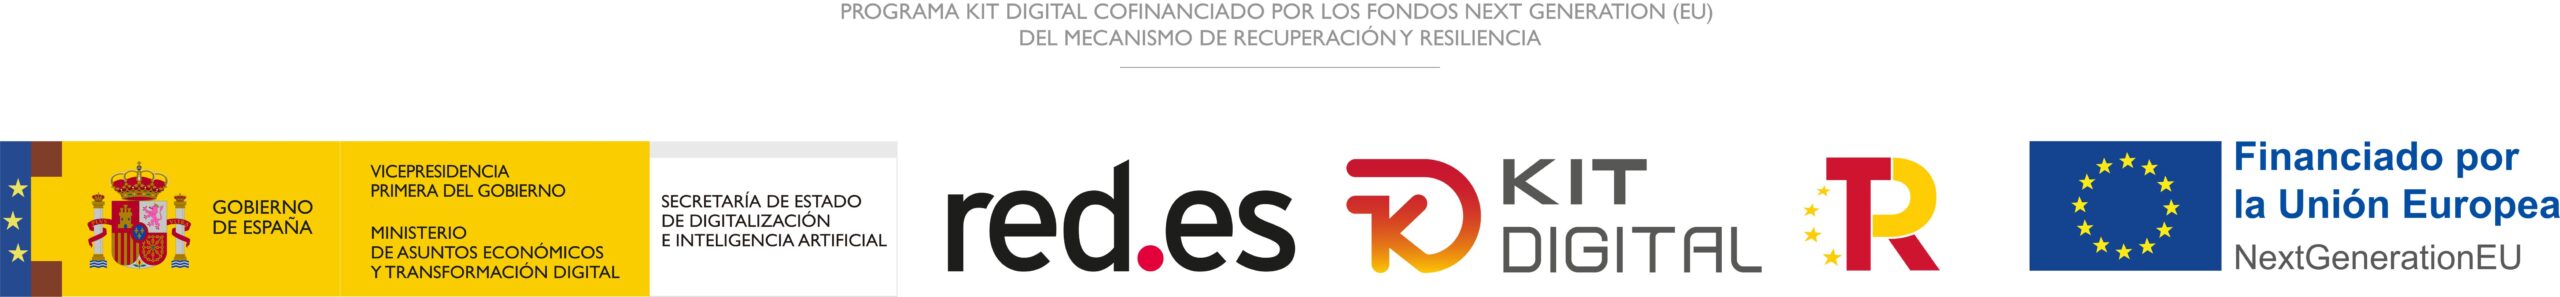 Logo Gobierno de España, red.es, Kit Digital, Plan de recuperación transformación y resiliencia y Financiado por la Unión Europea.